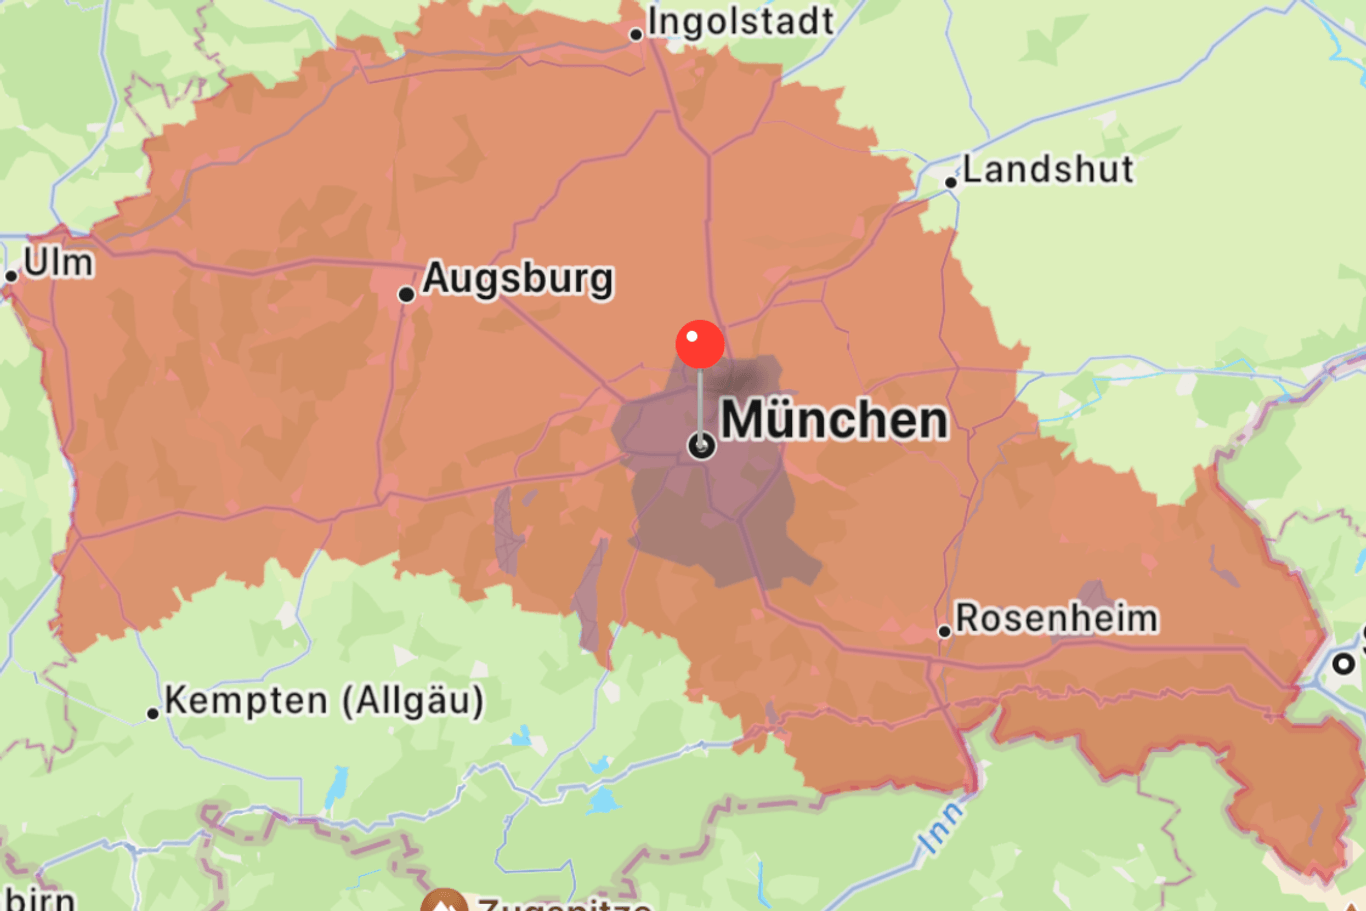 Meldung des Warnsystems Katwarn: Diese Meldung wurde Nutzern in der Region München am Freitagmorgen ausgespielt.